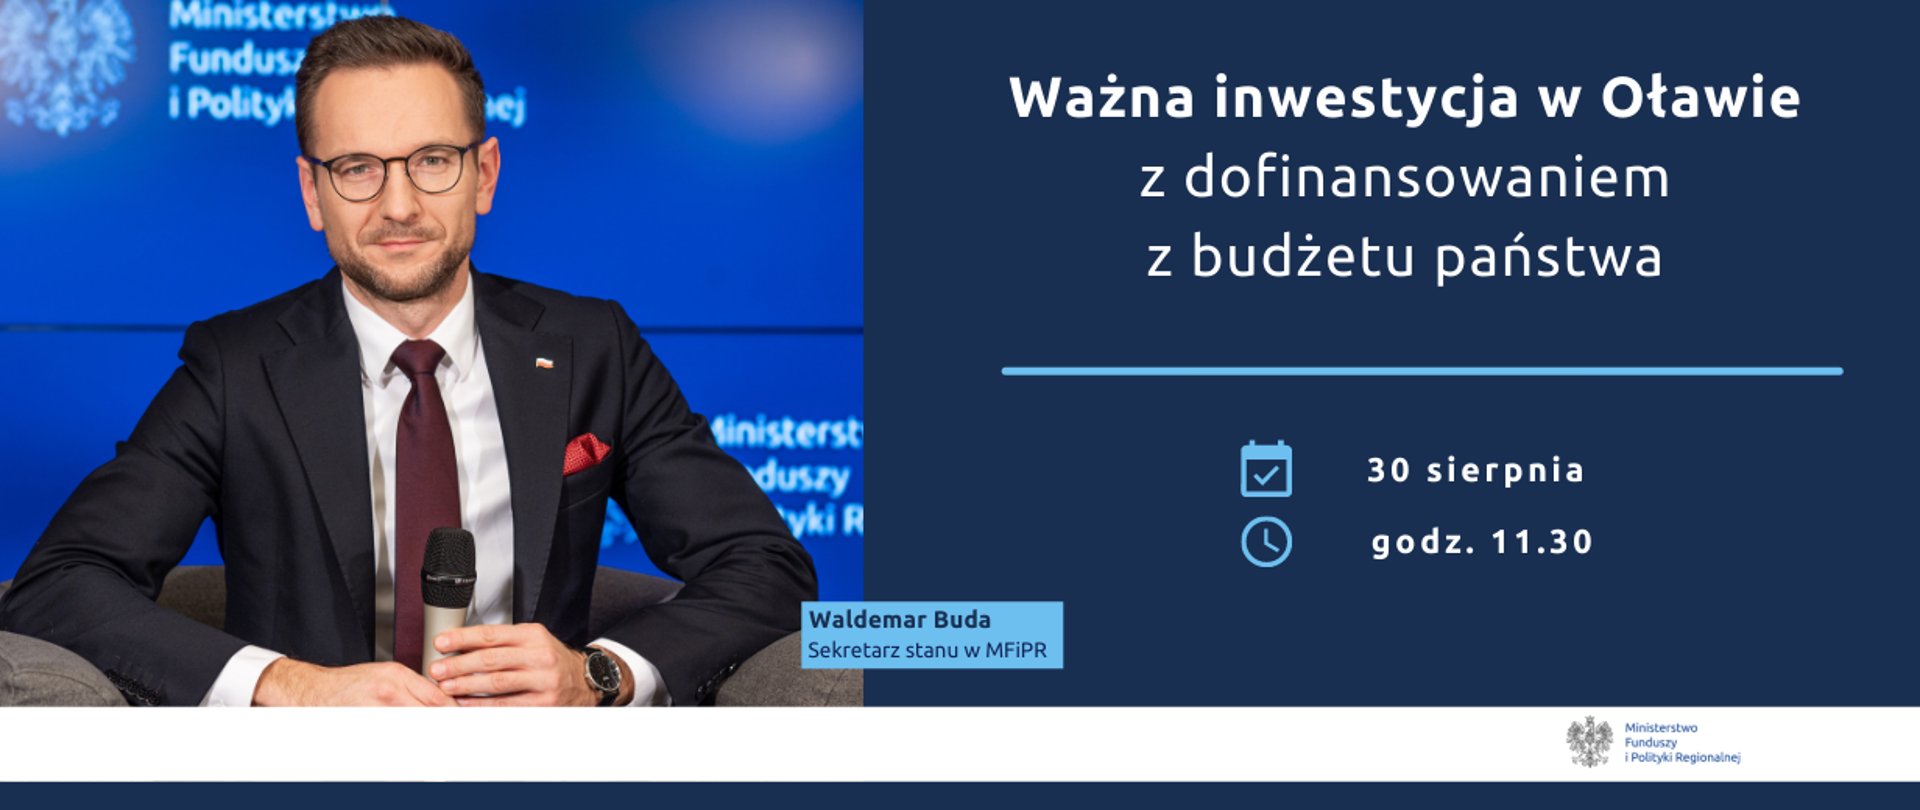 Zdjęcie wiceministra Waldemara Budy, siedzącego z mikrofonem na tle ekranu z logo MFiPR. Obok napis: Ważna inwestycja w Oławie z dofinansowaniem z budżetu państwa, 30 sierpnia, godz. 11.30